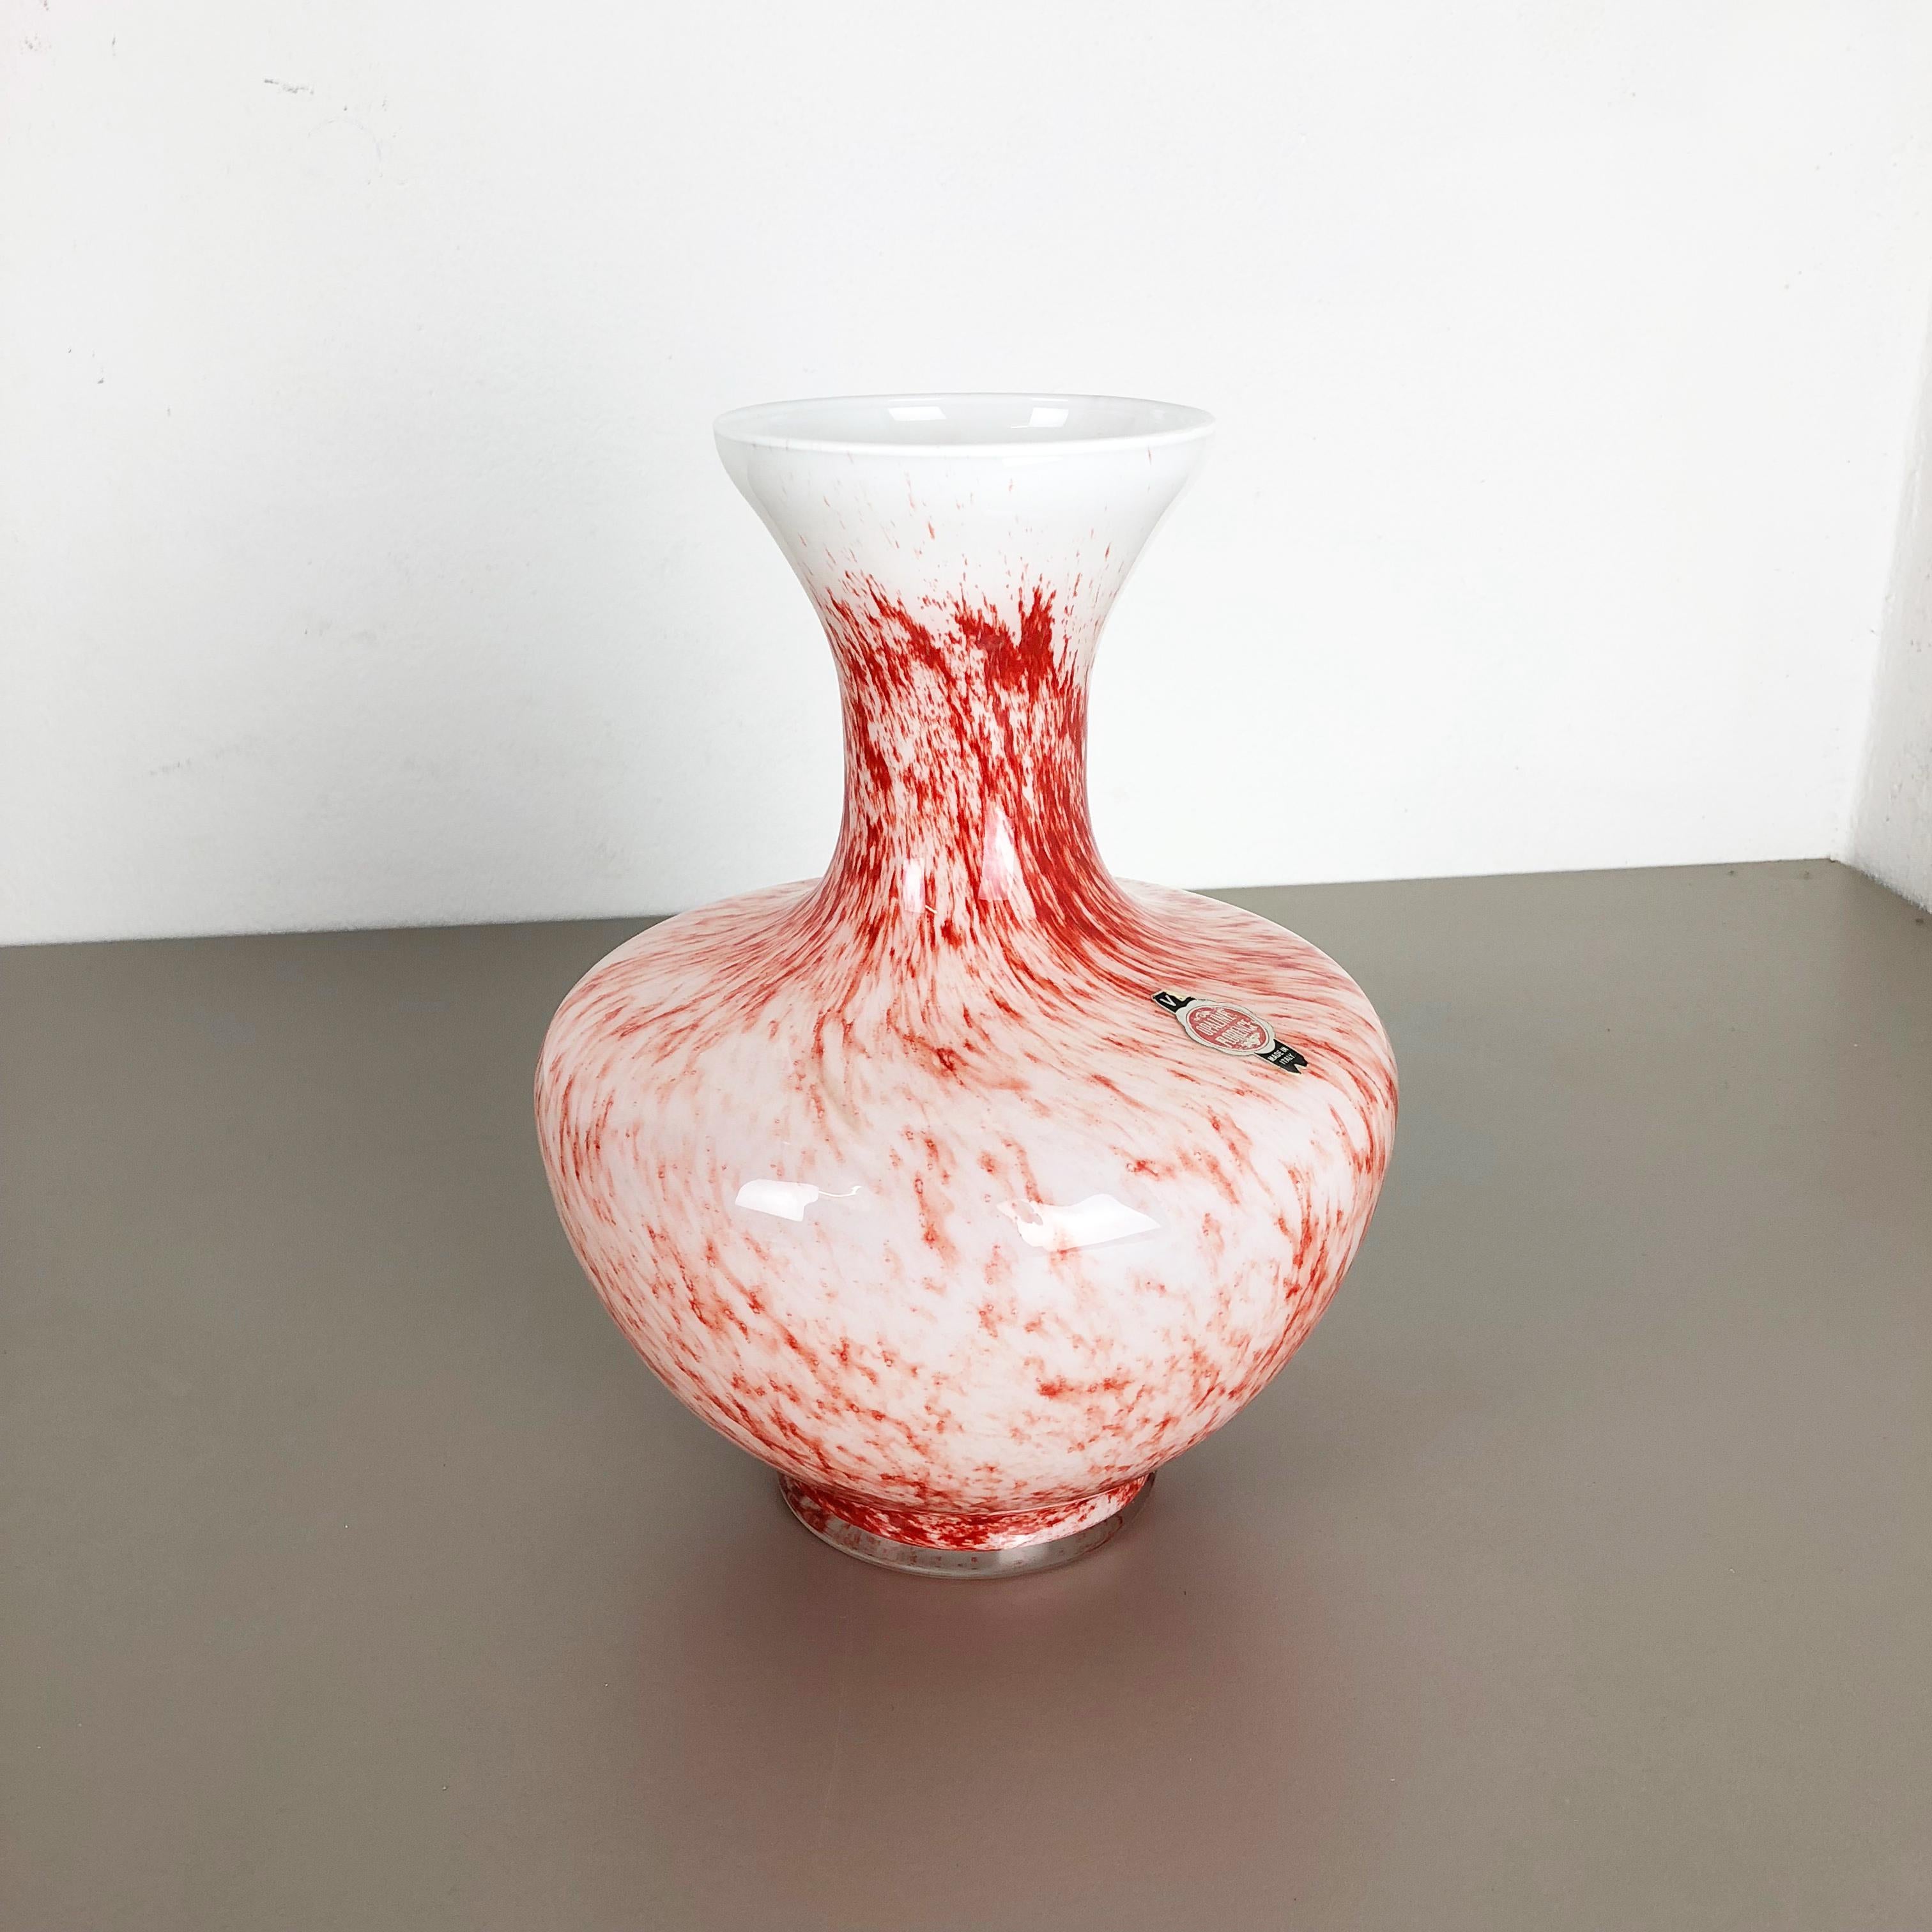 Artikel:

Pop-Art-Vase


Produzent:

Opalin, Florenz


Jahrzehnt:

1970s


Original Vintage 1970er Jahre Pop Art mundgeblasen Vase in Italien von Opaline Florenz gemacht. Hergestellt aus hochwertigem italienischem Opalglas.
Hübsche 1970er